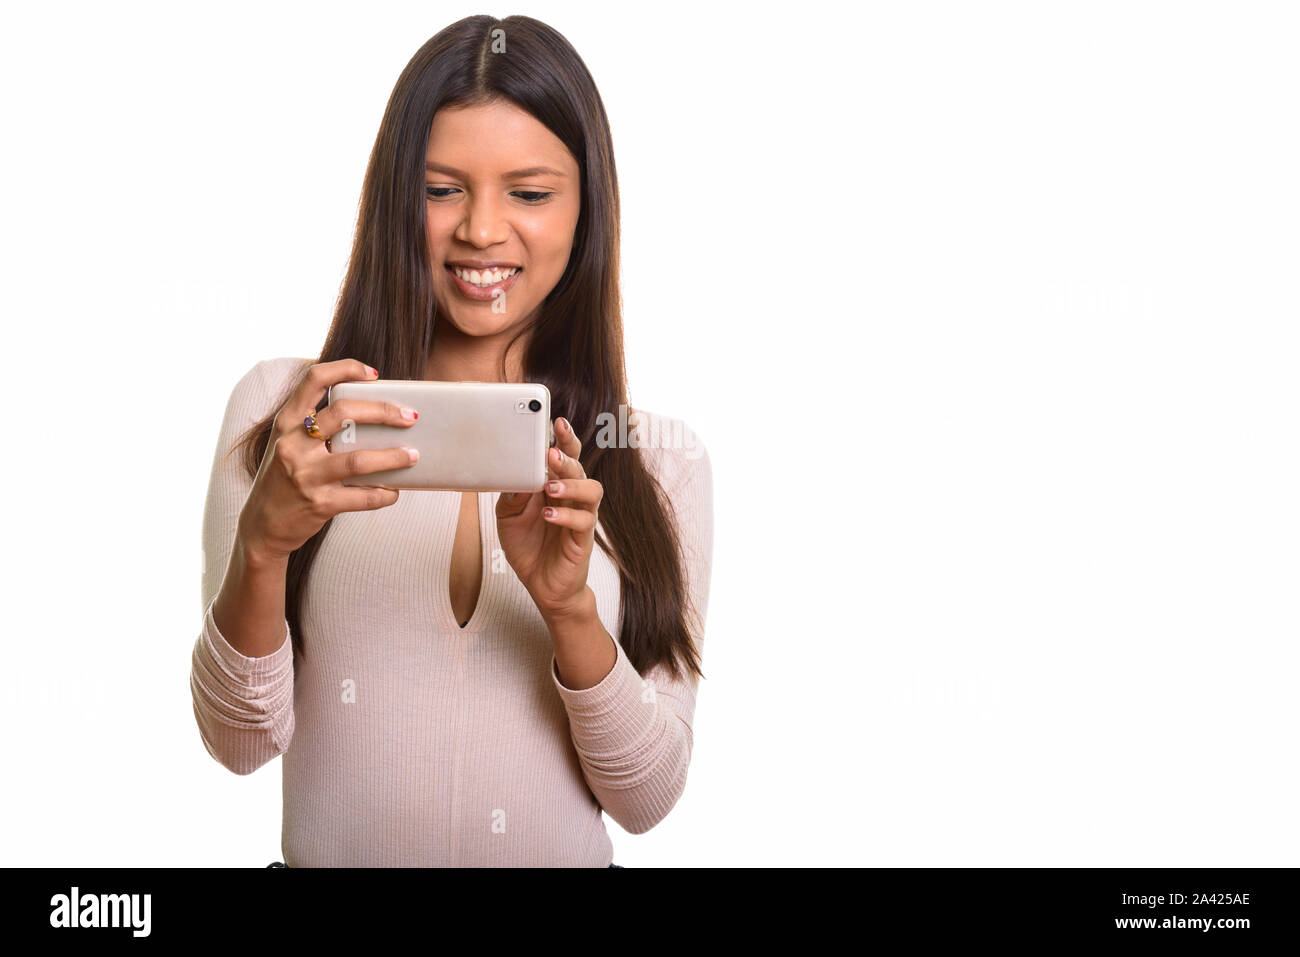 Les jeunes professionnels Brazilian woman smiling pendant la prise de photo avec mo Banque D'Images